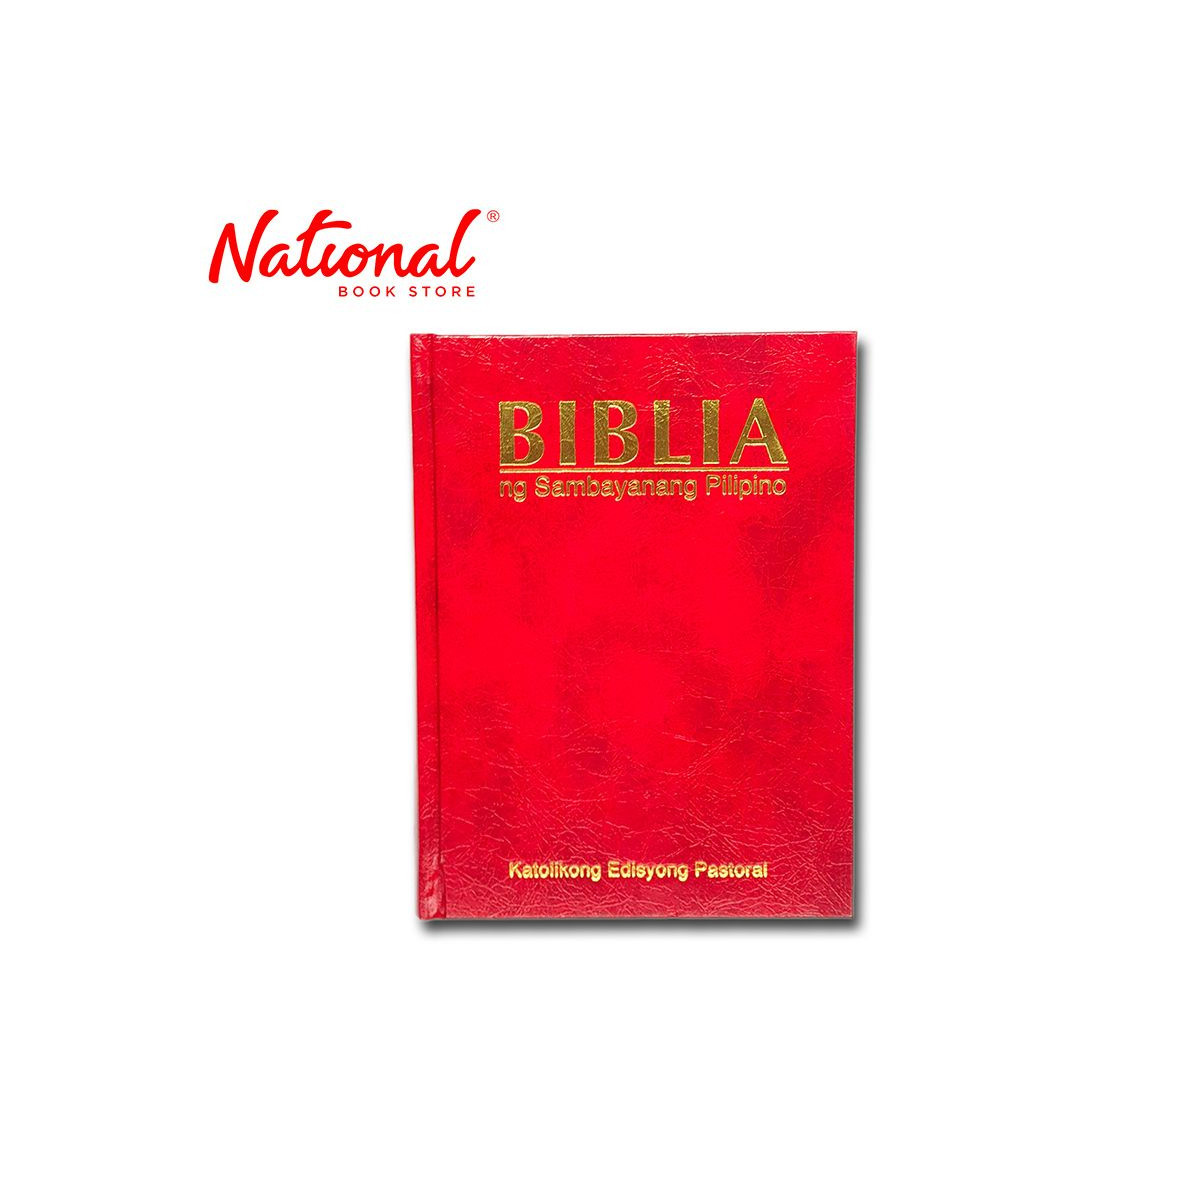 Biblia ng Sambayanang Pilipino Popular Hardcover - Bible